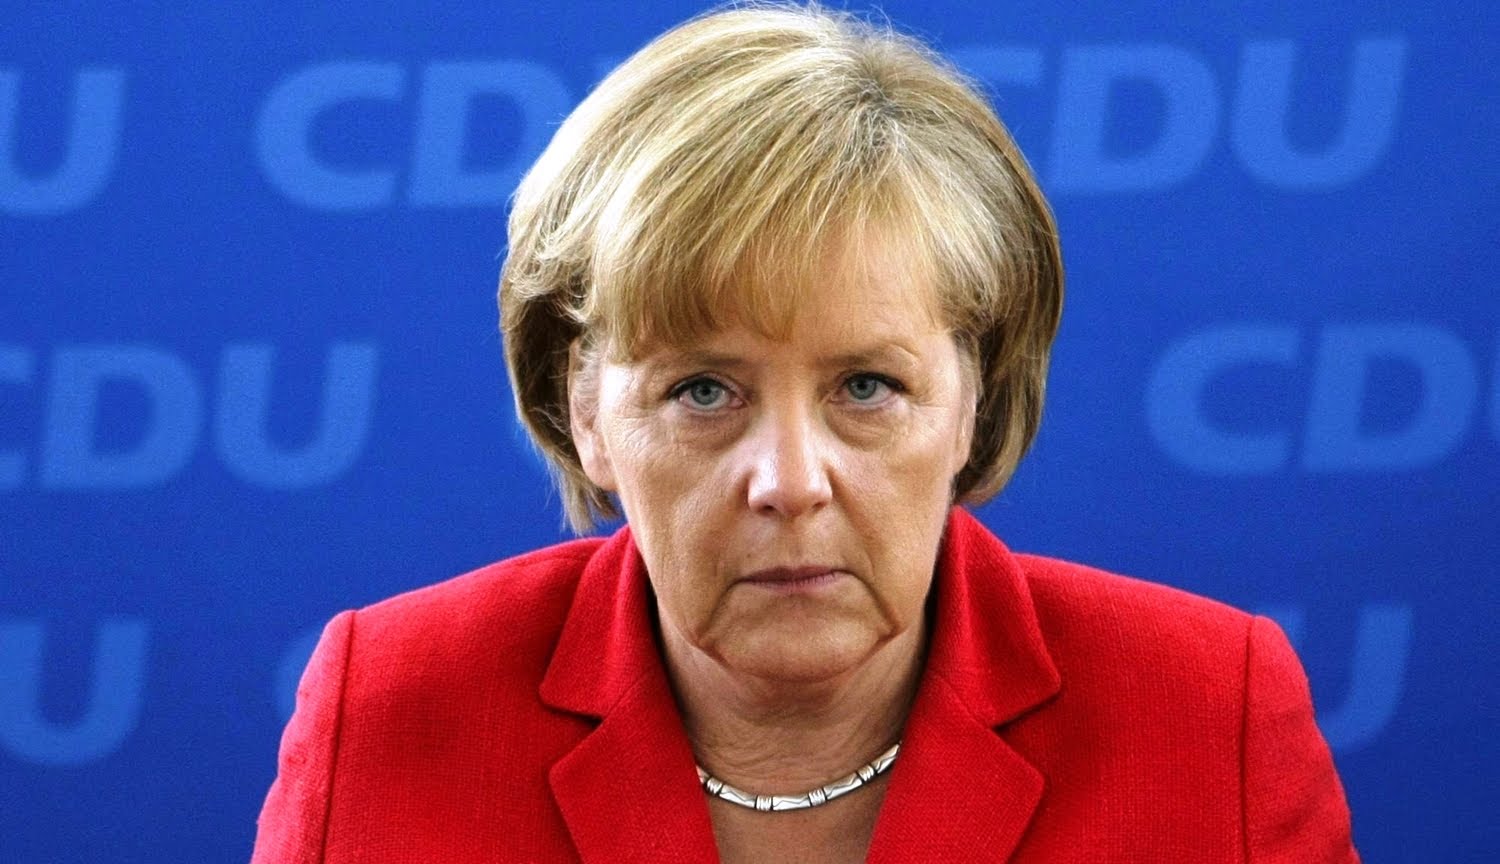 Европа опасается новой внешней политики США: Меркель намерена отправить в Нью-Йорка своего советника для встречи с окружением Трампа